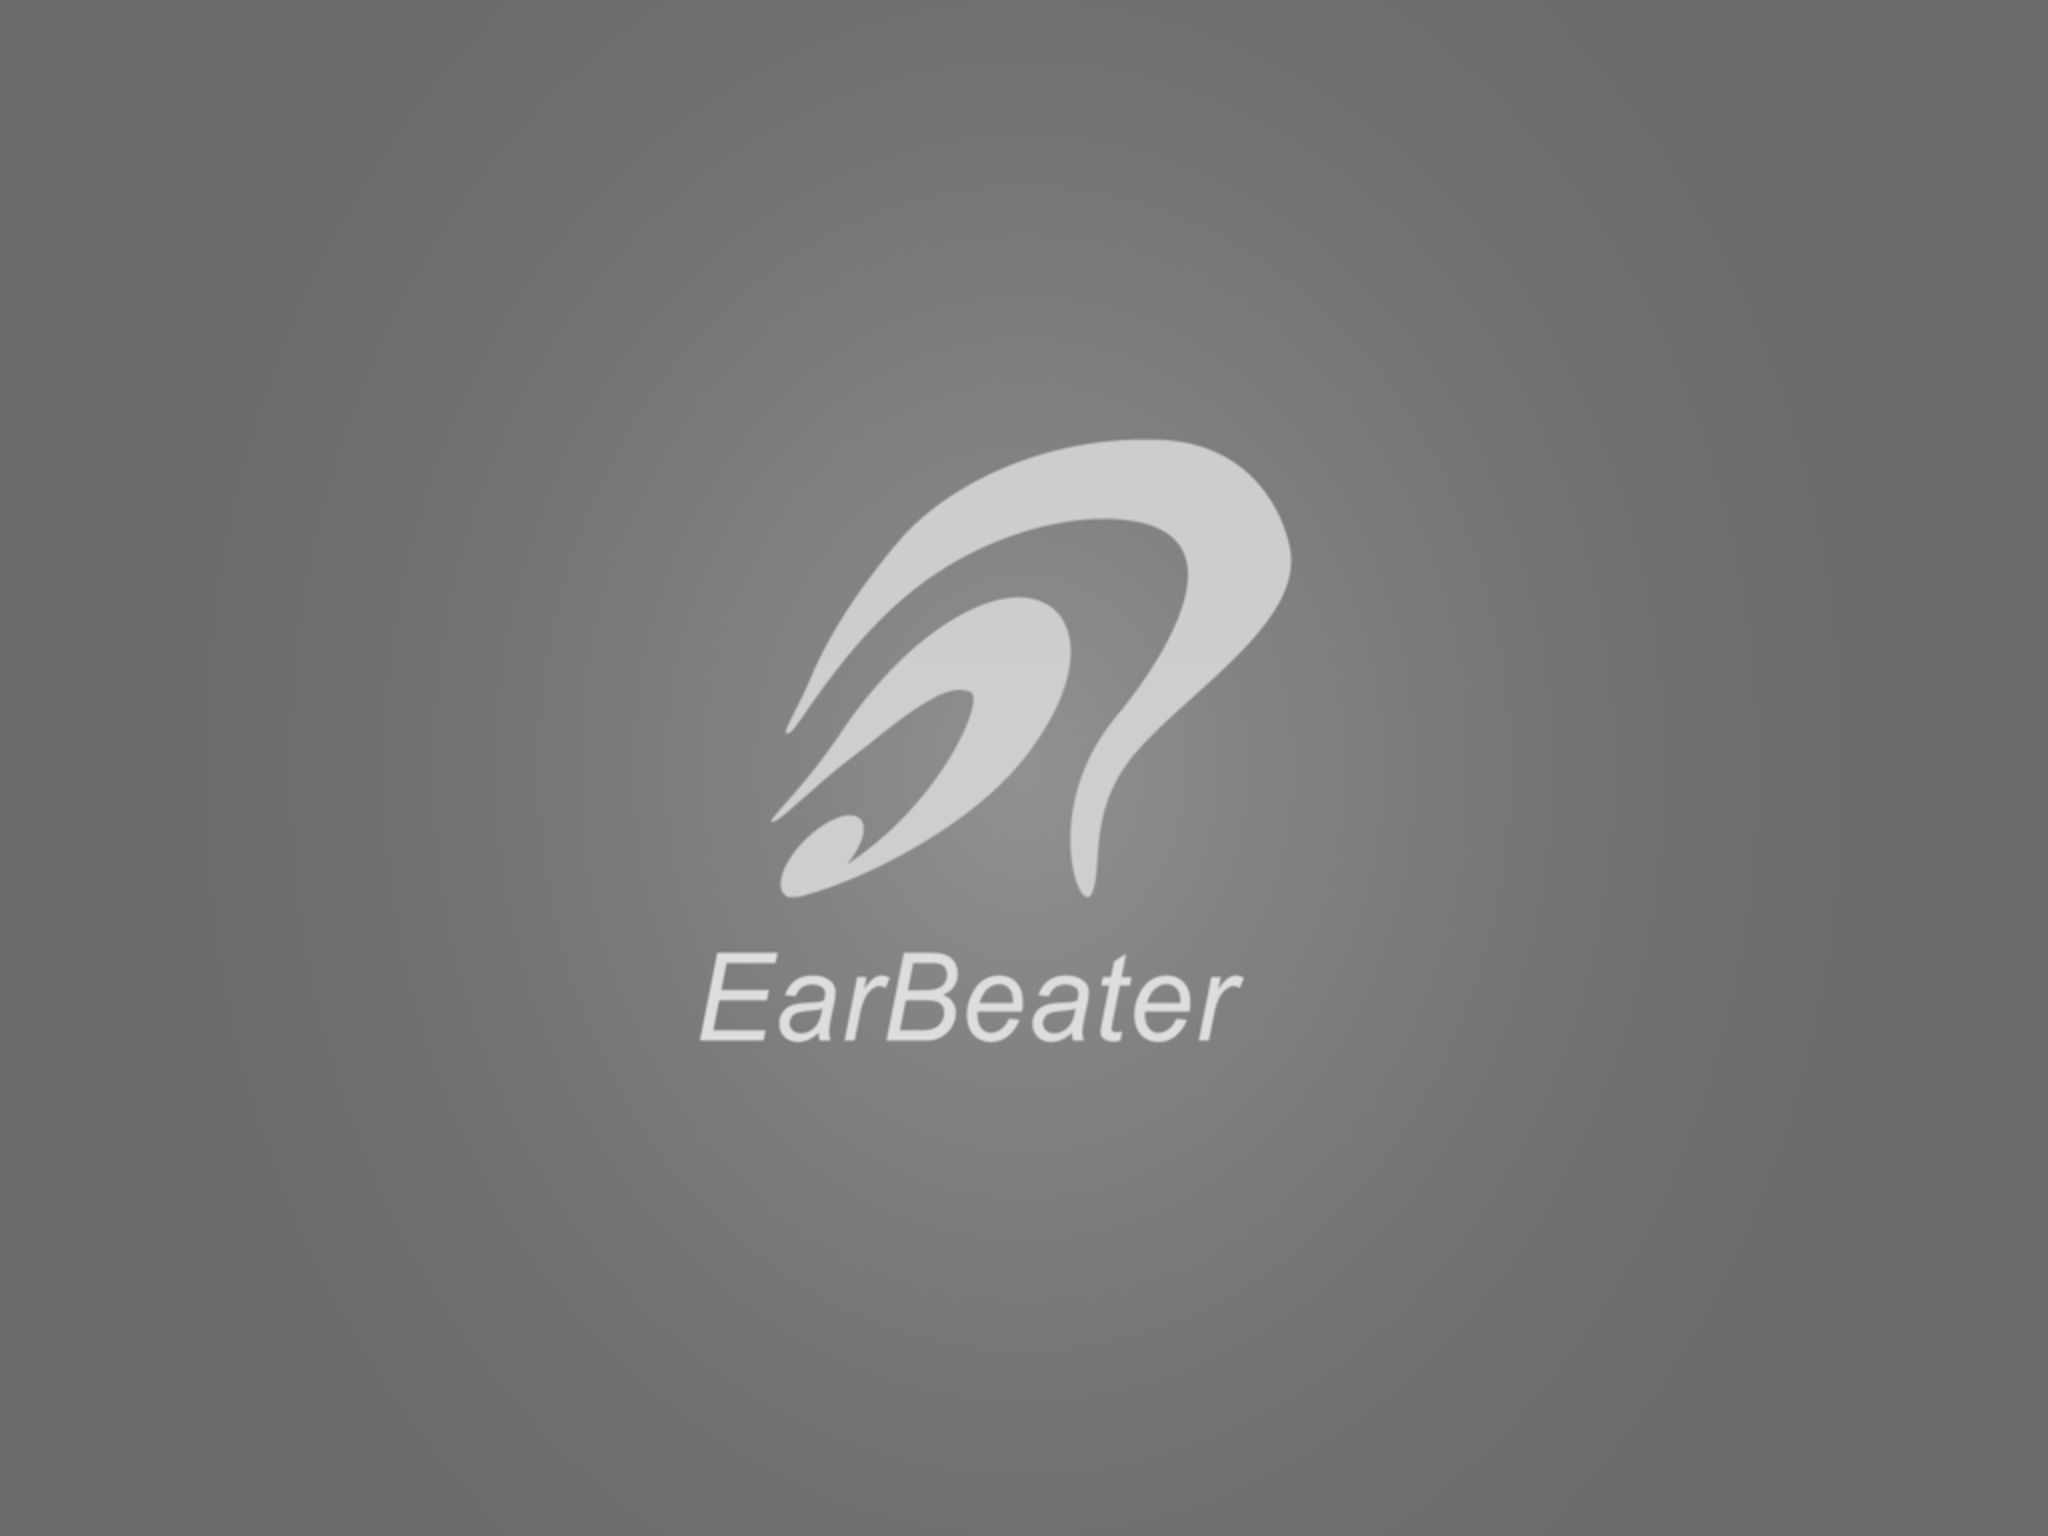 Figure 10 – EarBeater Logo